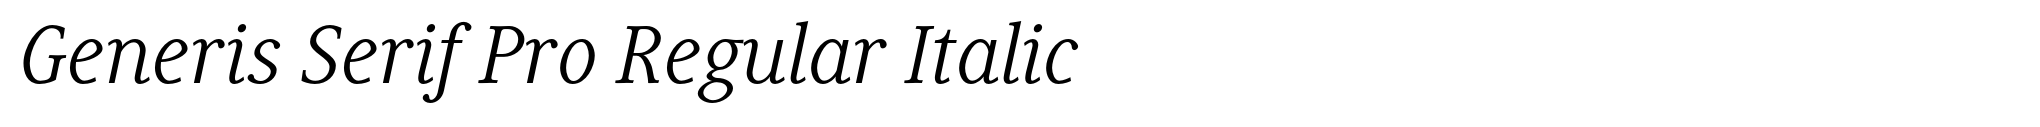 Generis Serif Pro Regular Italic image